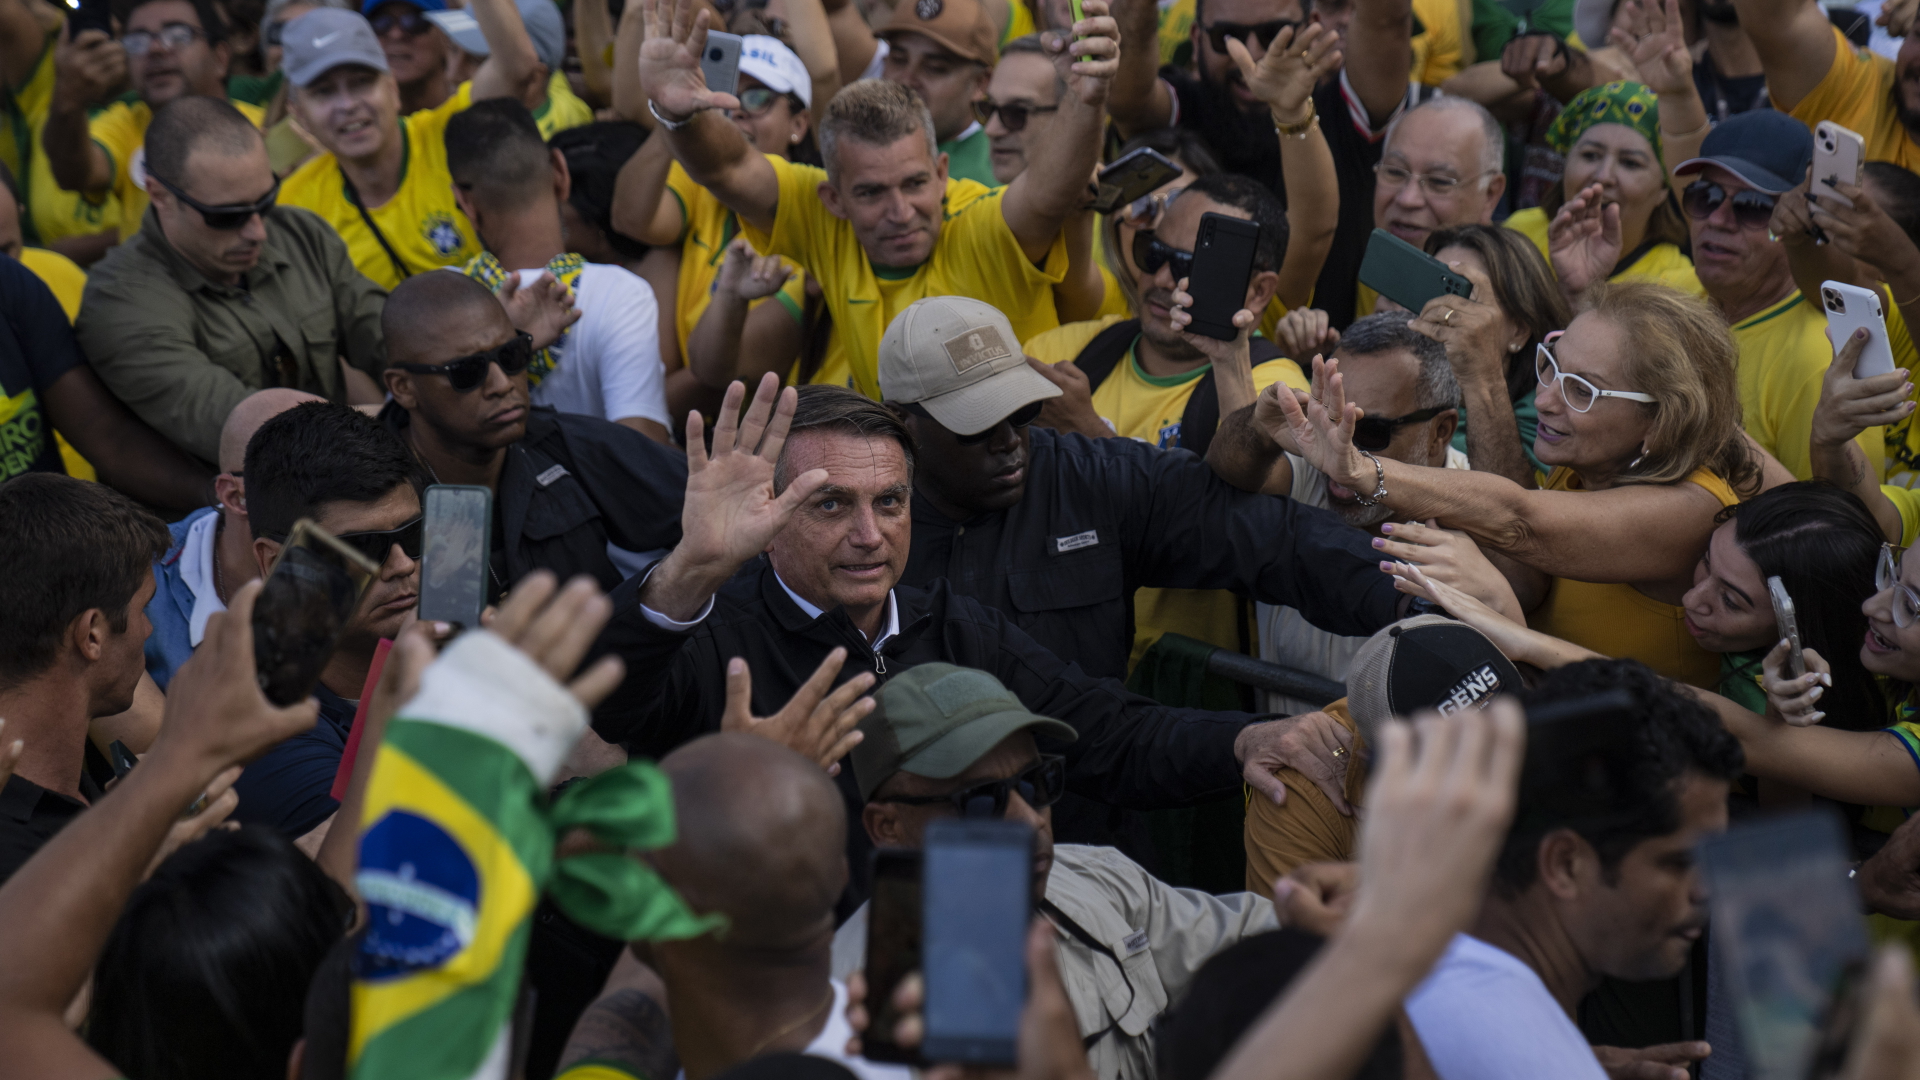 Brasiliens Präsident Jair Bolsonaro wird von einem Bodyguard durch eine Menge seiner Anhänger geführt, während der Präsident in die Kamera winkt. | dpa